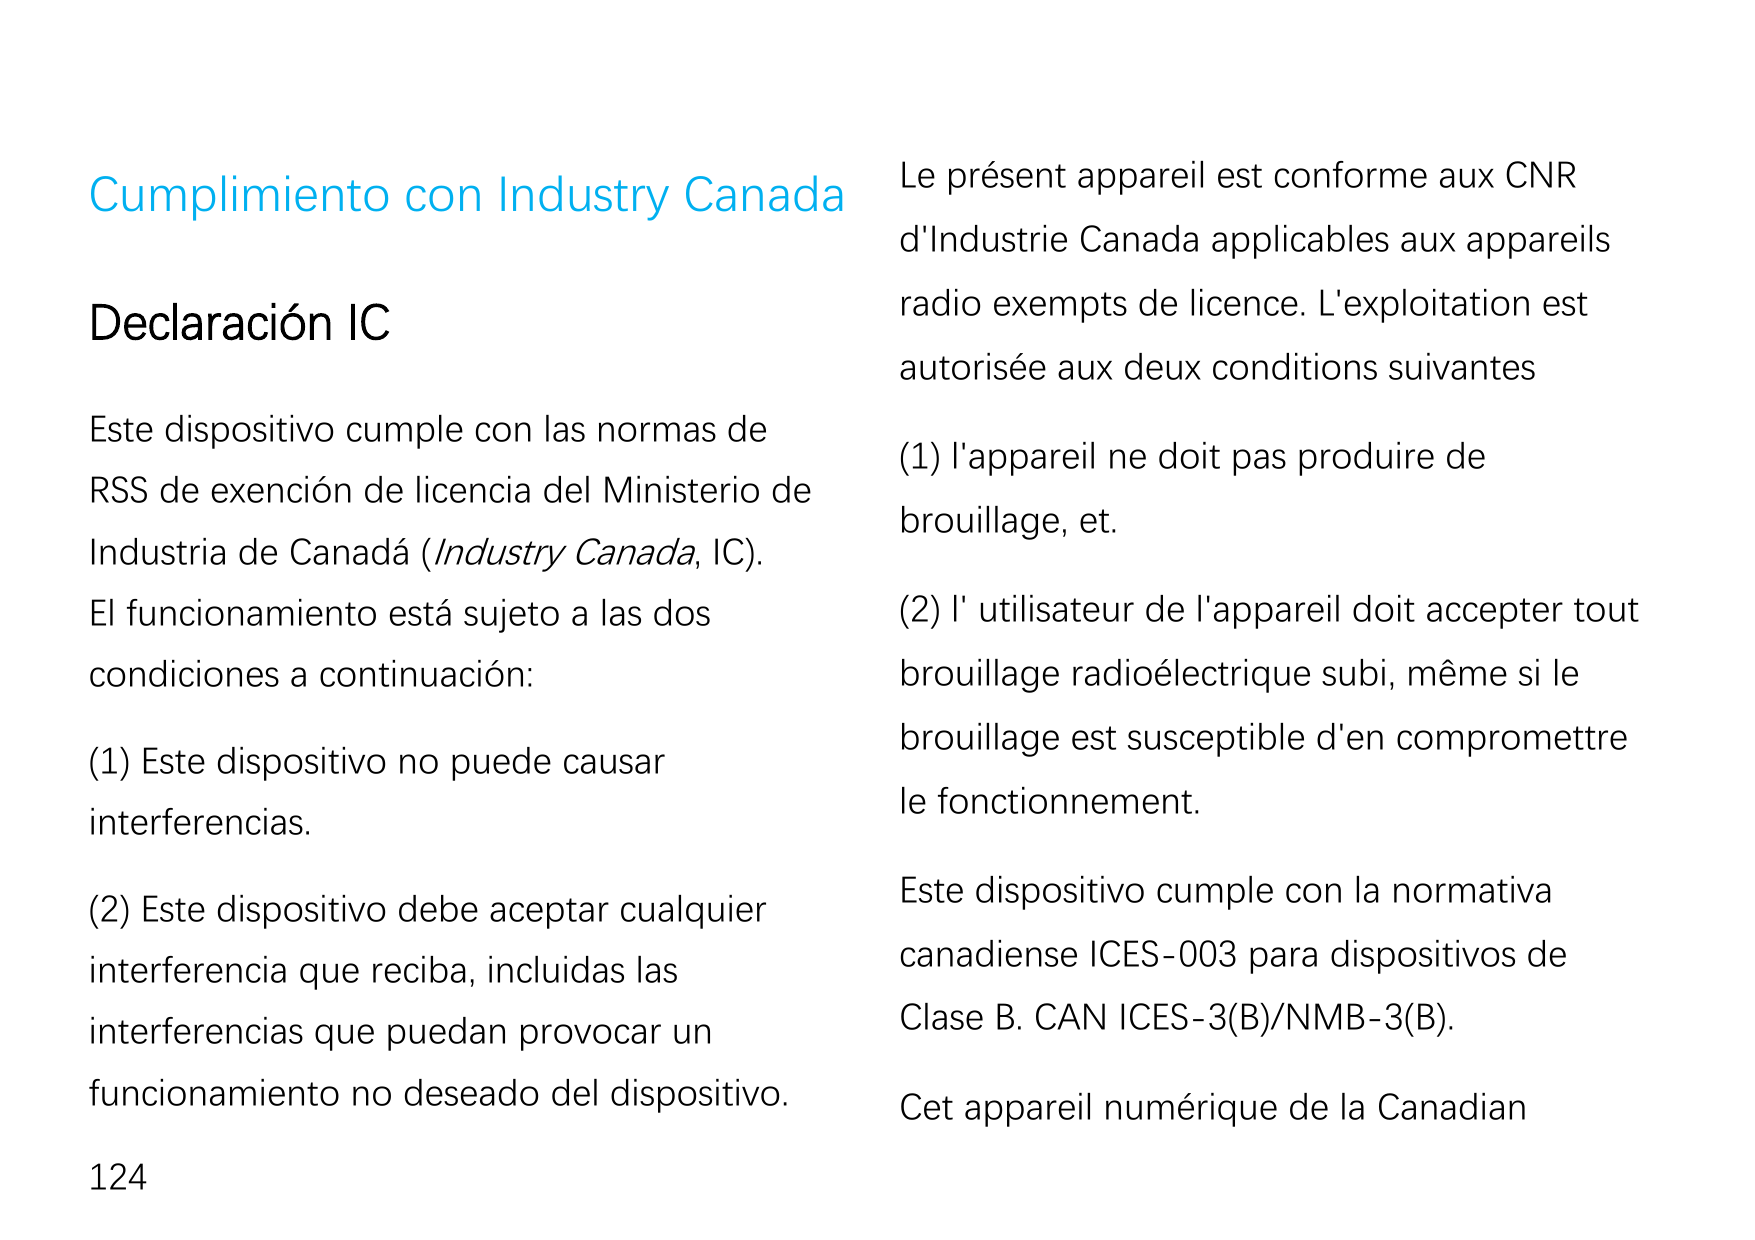 Cumplimiento con Industry CanadaLe présent appareil est conforme aux CNRDeclaración ICradio exempts de licence. L'exploitation e